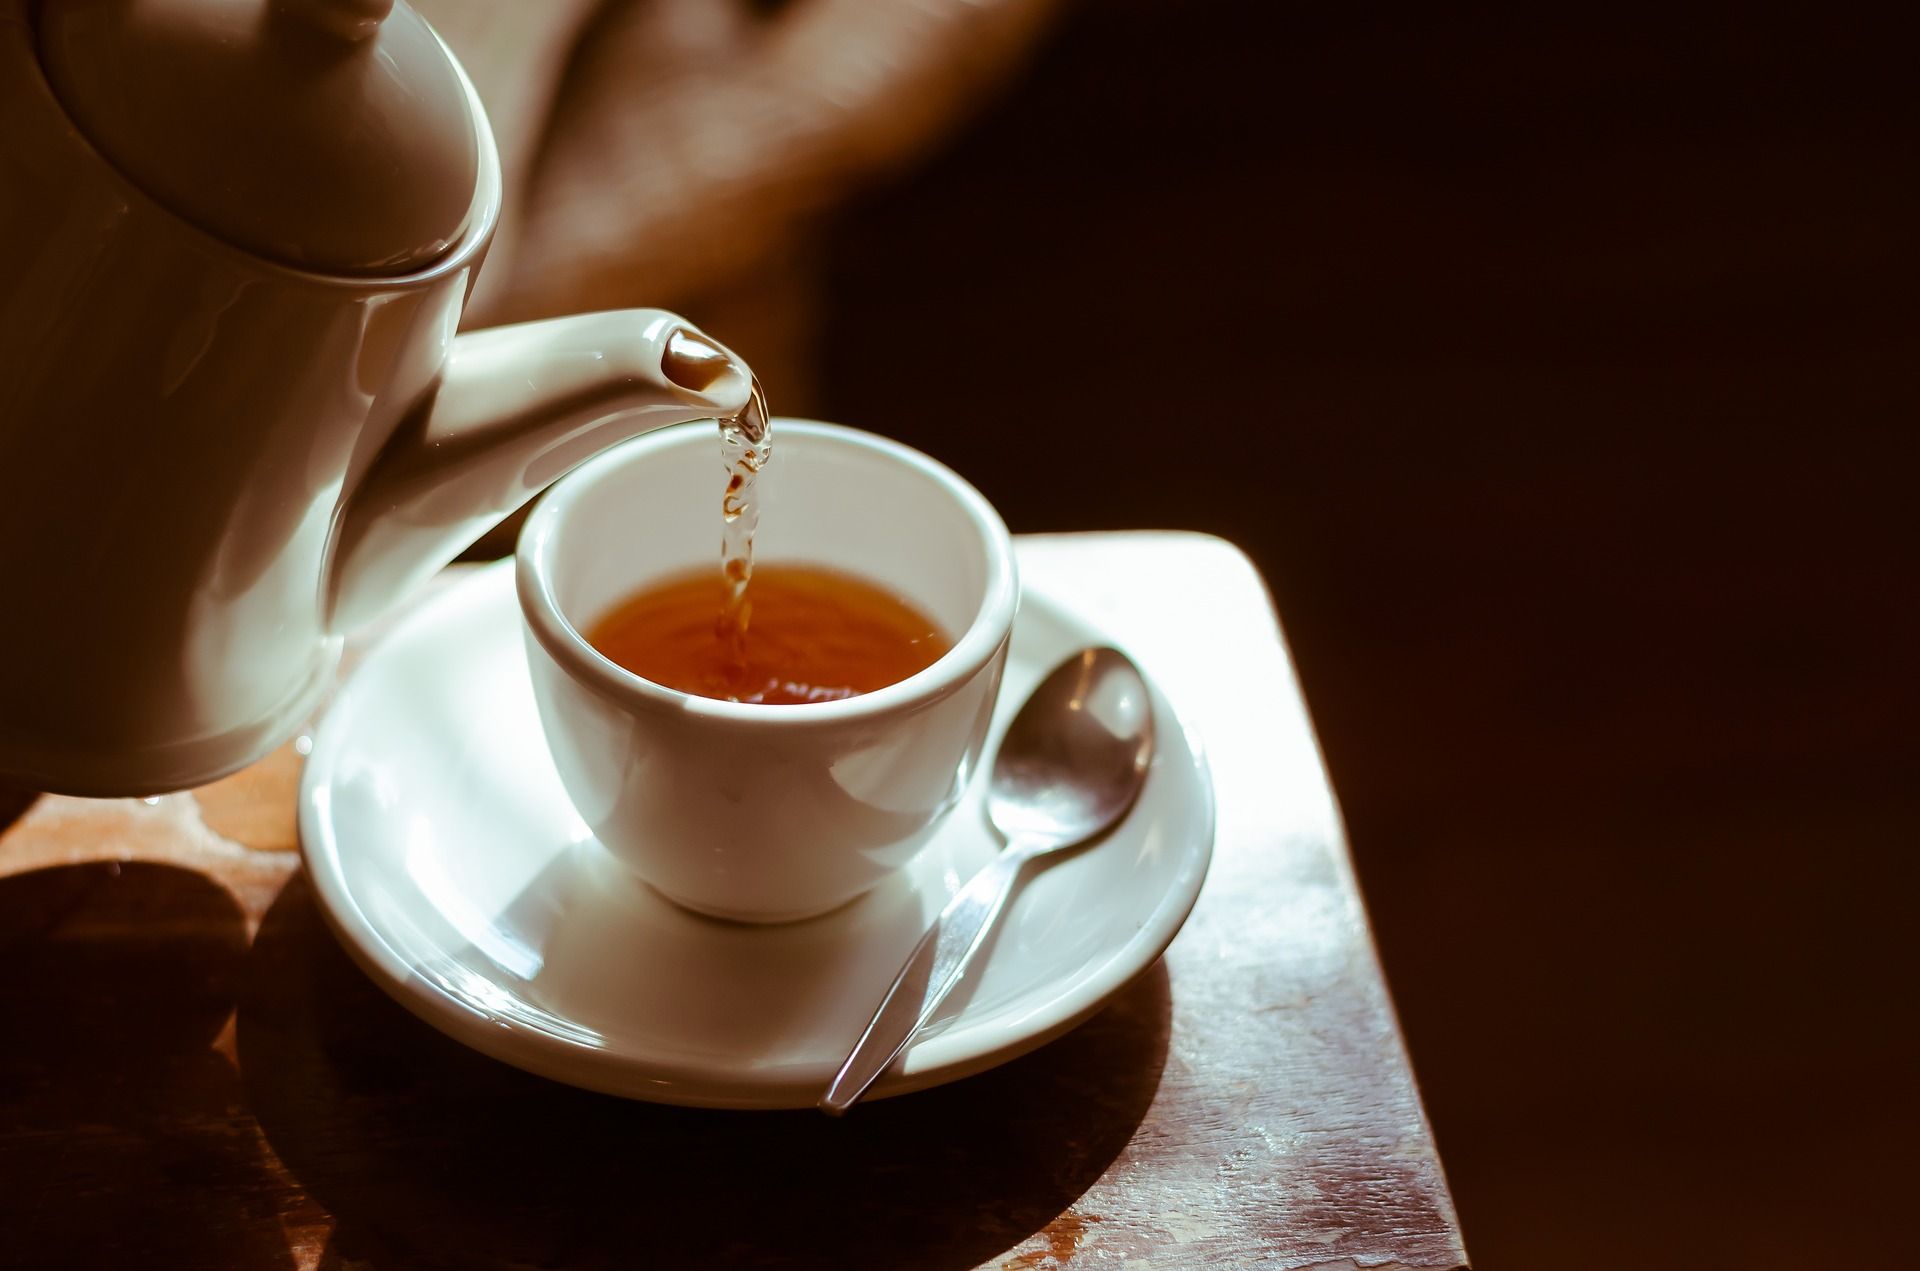 Untuk memangkas biaya impor, warga Pakistan diminta kurangi konsumsi teh harian.